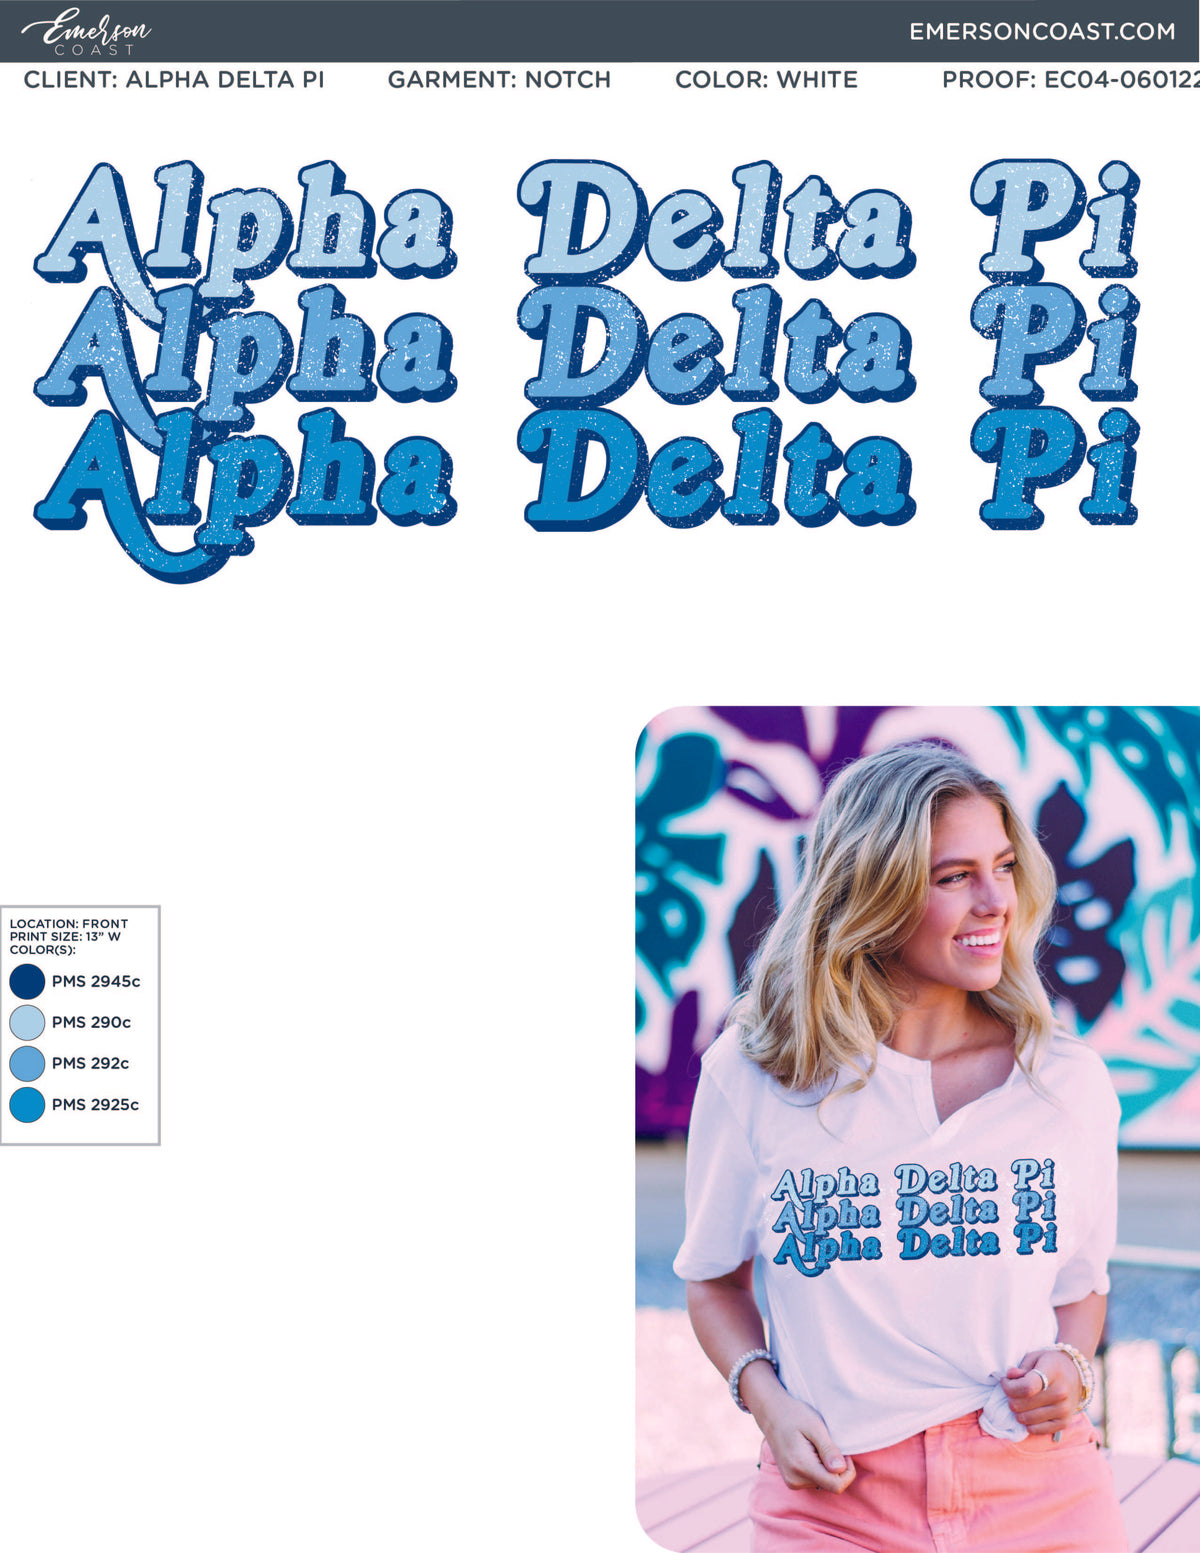 Alpha Delta Pi Blue Repeating Notch Tee